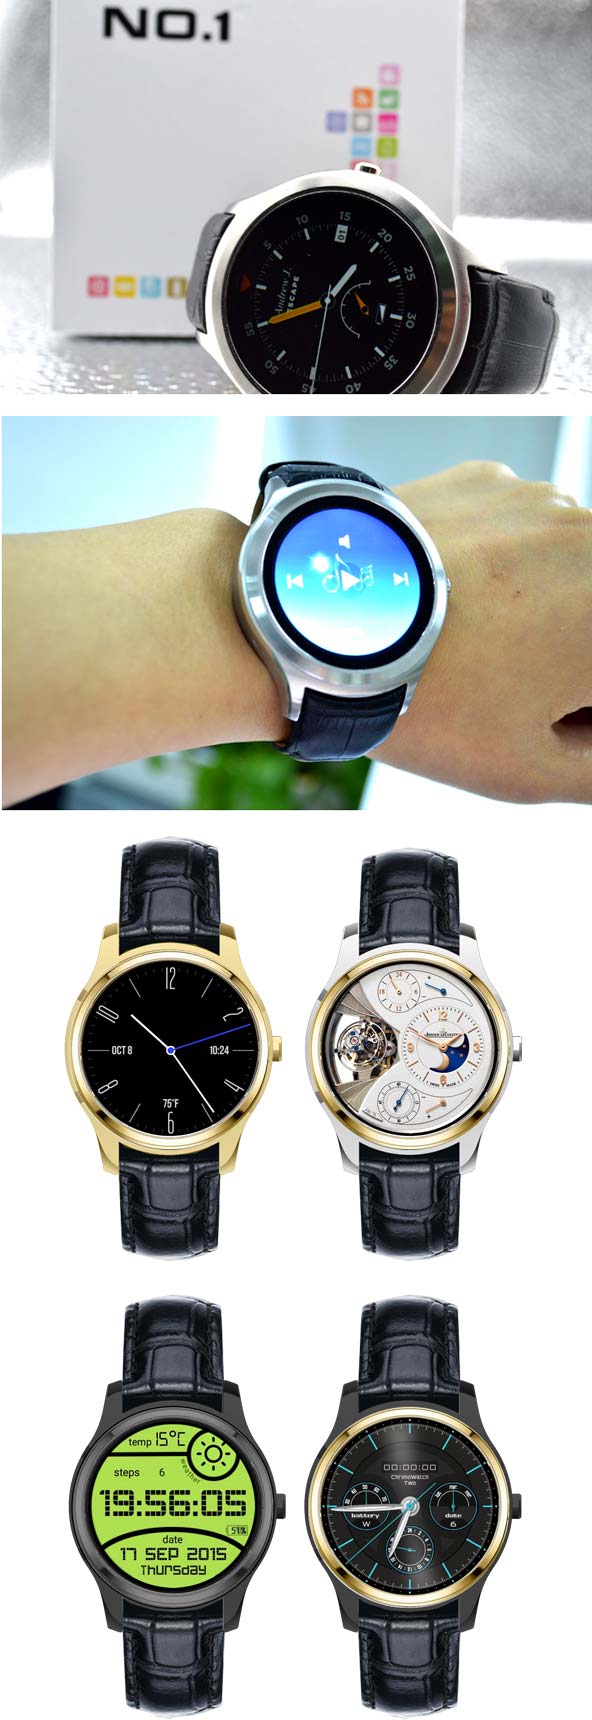 No.1 D5 - новейшие умные часы из Китая